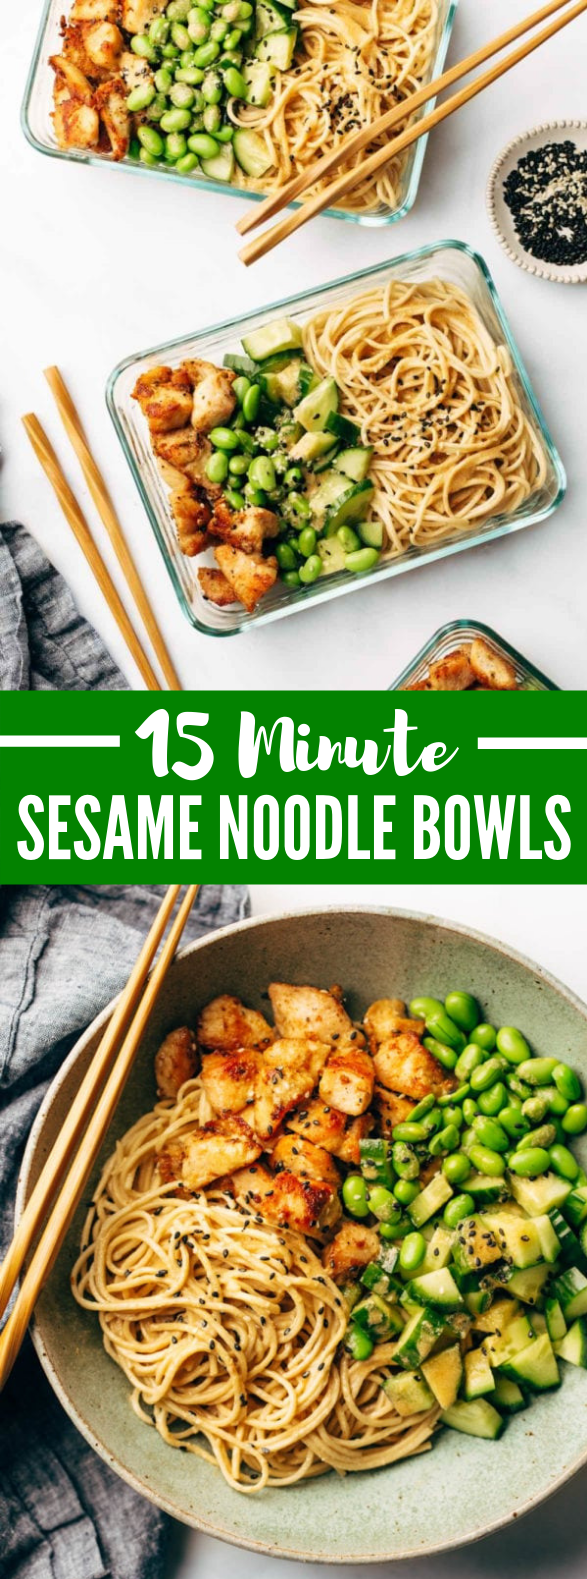 15 Minute Meal Prep: Sesame Noodle Bowls #lunch #meal #noodles #simplerecipe #dinner